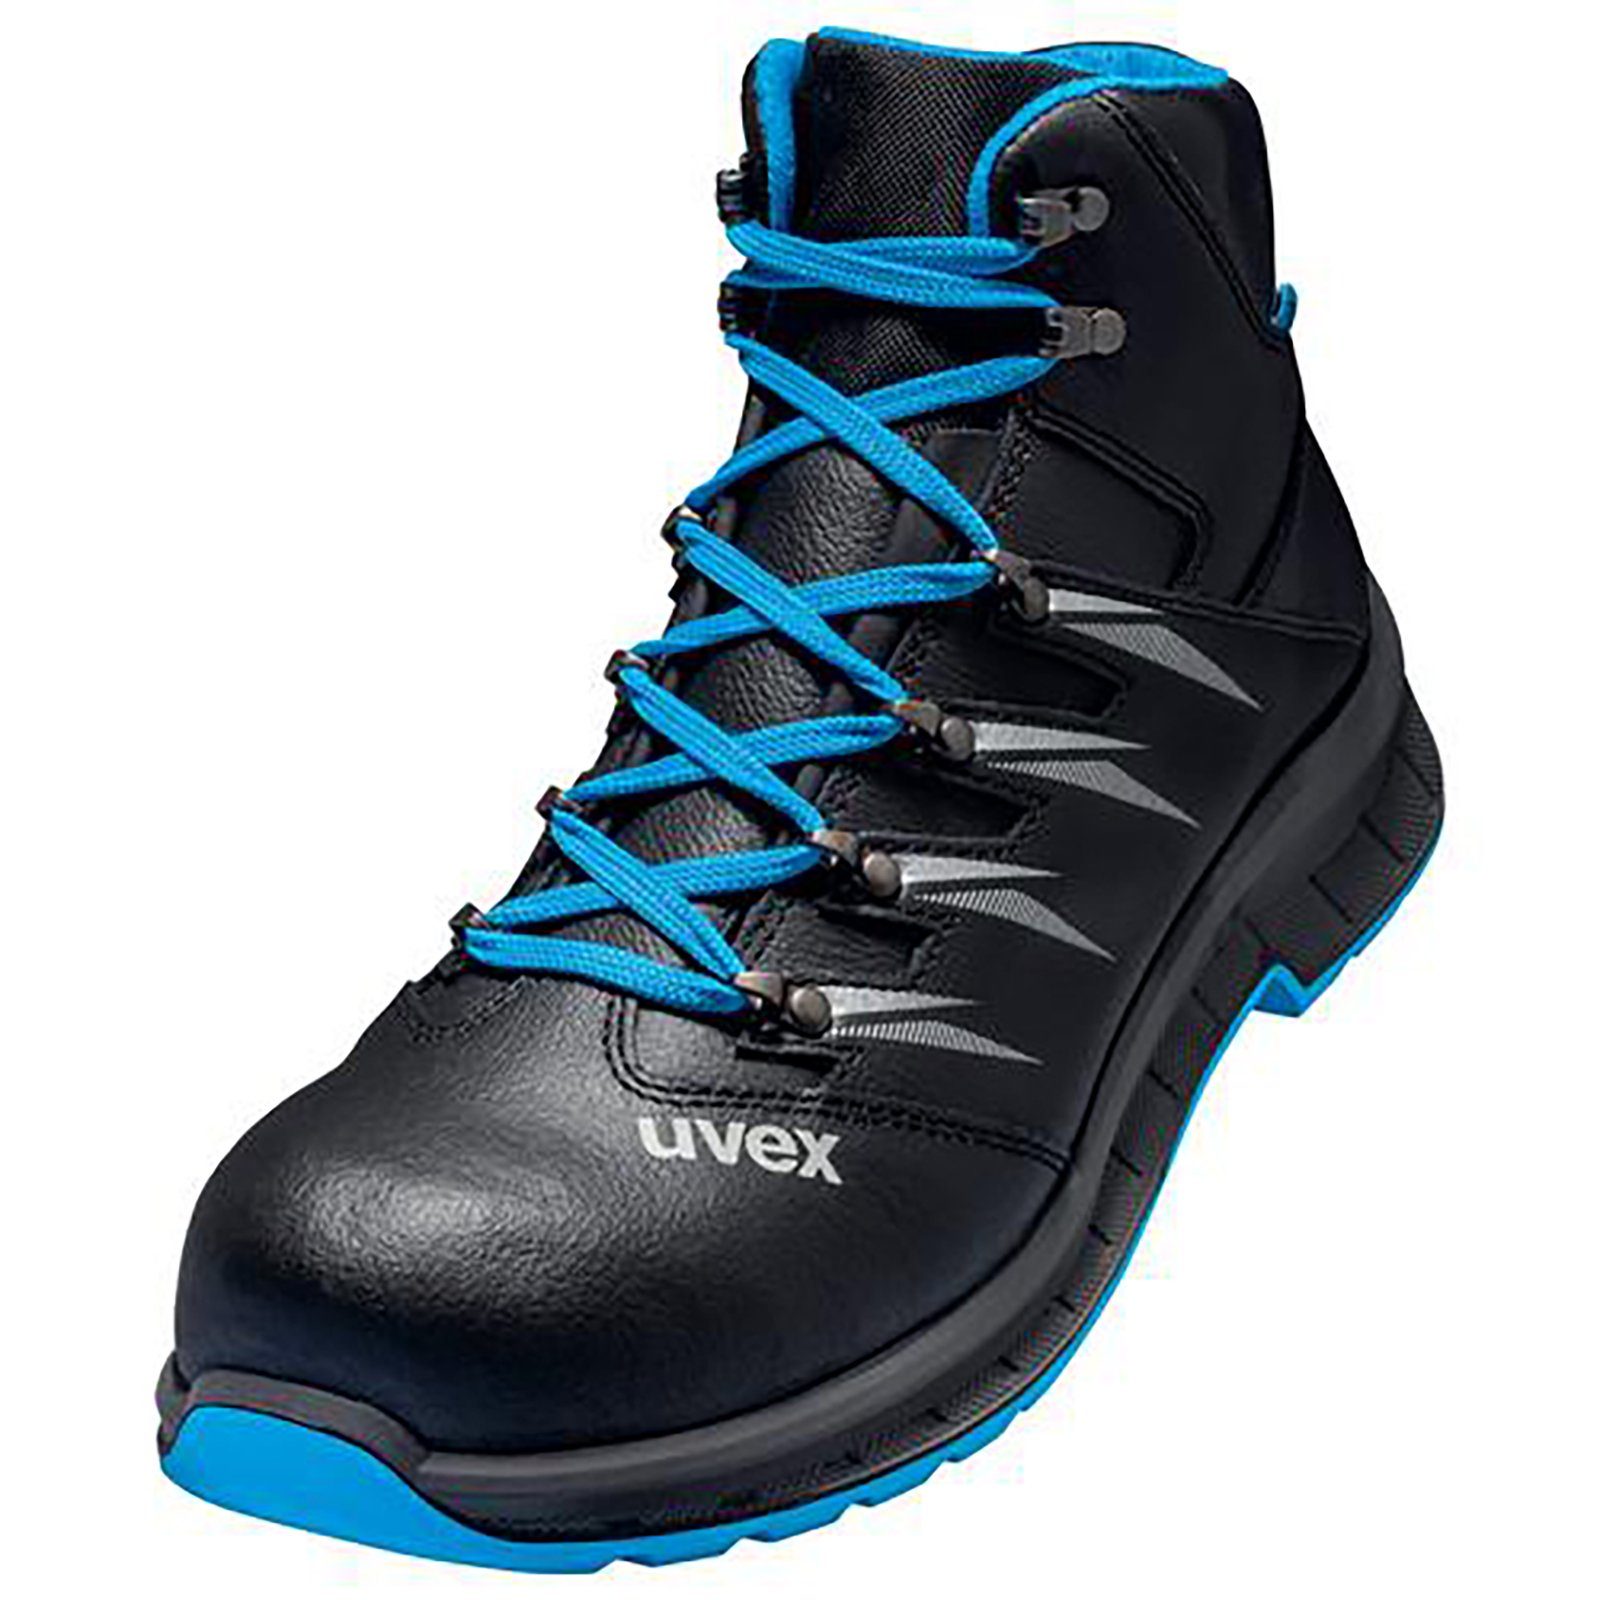 Uvex 2 trend Stiefel Sicherheitsstiefel blau, S2 Weite schwarz 11